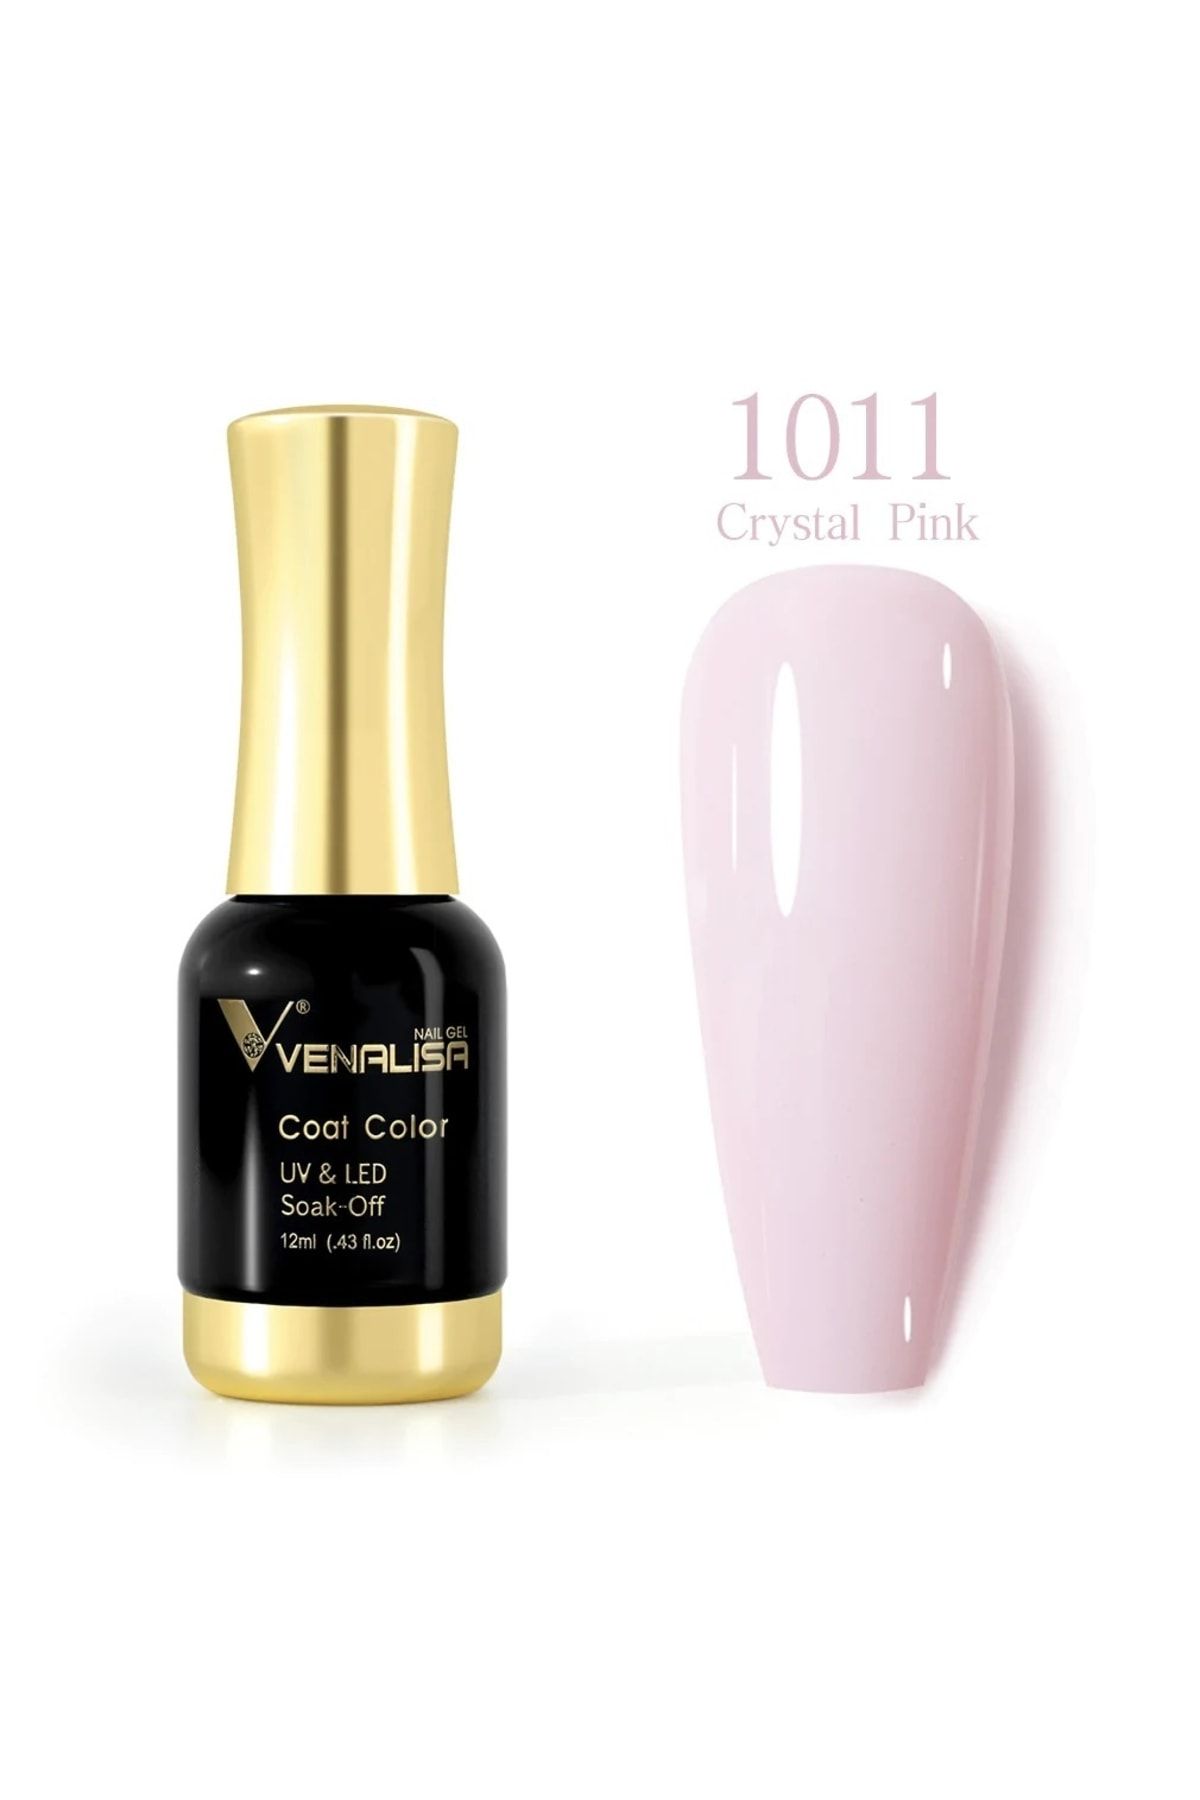 Venalisa 12 ml Kalıcı Oje Crystal Pink Uv Led Oje 1011